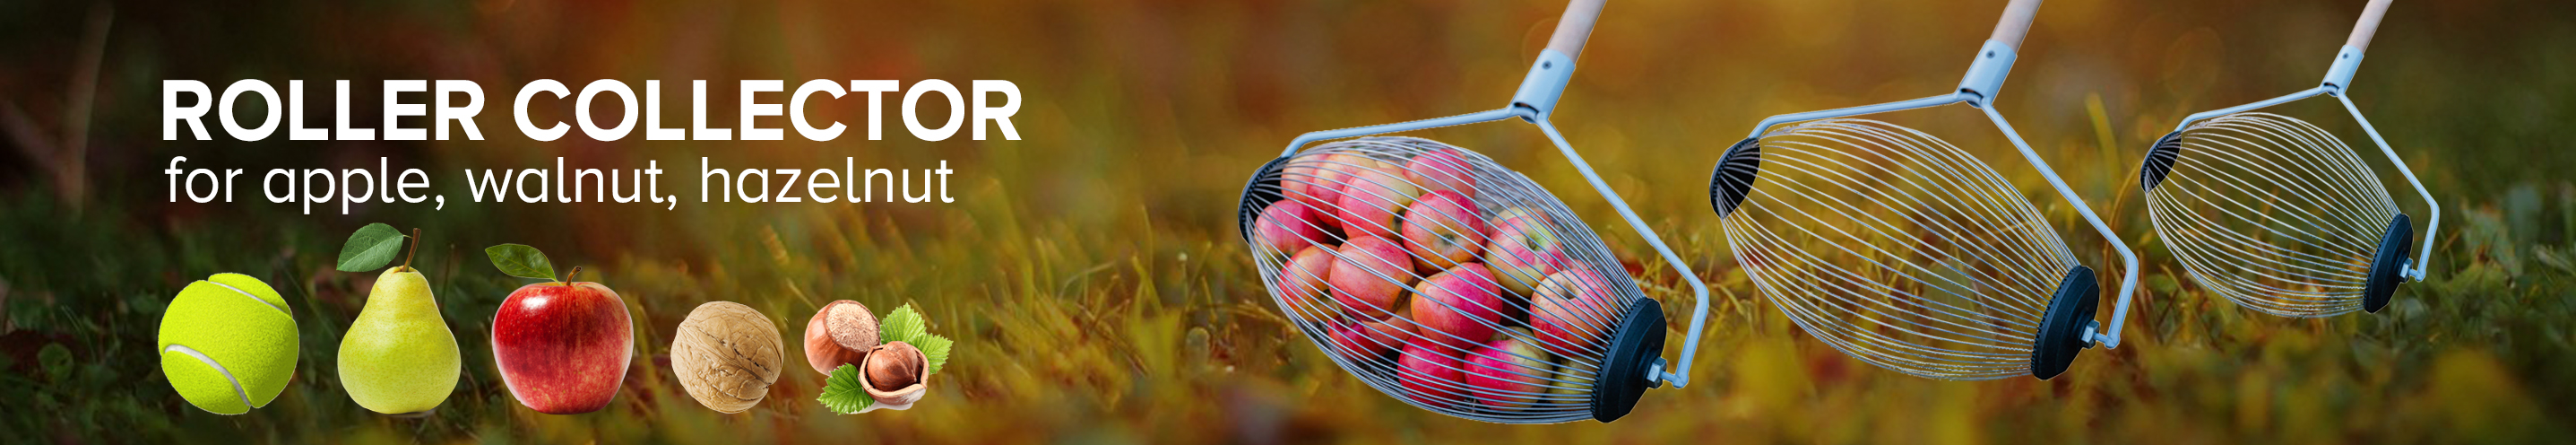 Roller collectors for harvesting aplle, walnut, hazelnut